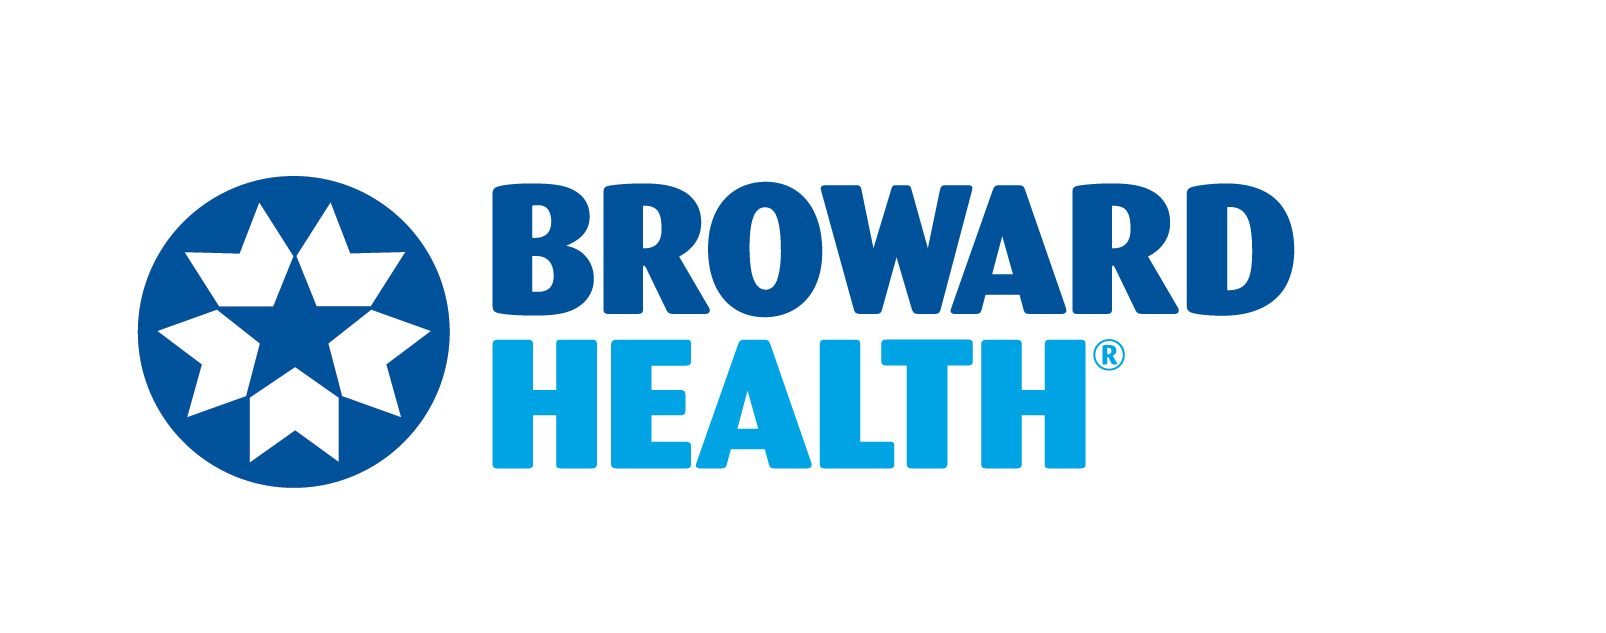 CCC. Broward Health (Tier 4)